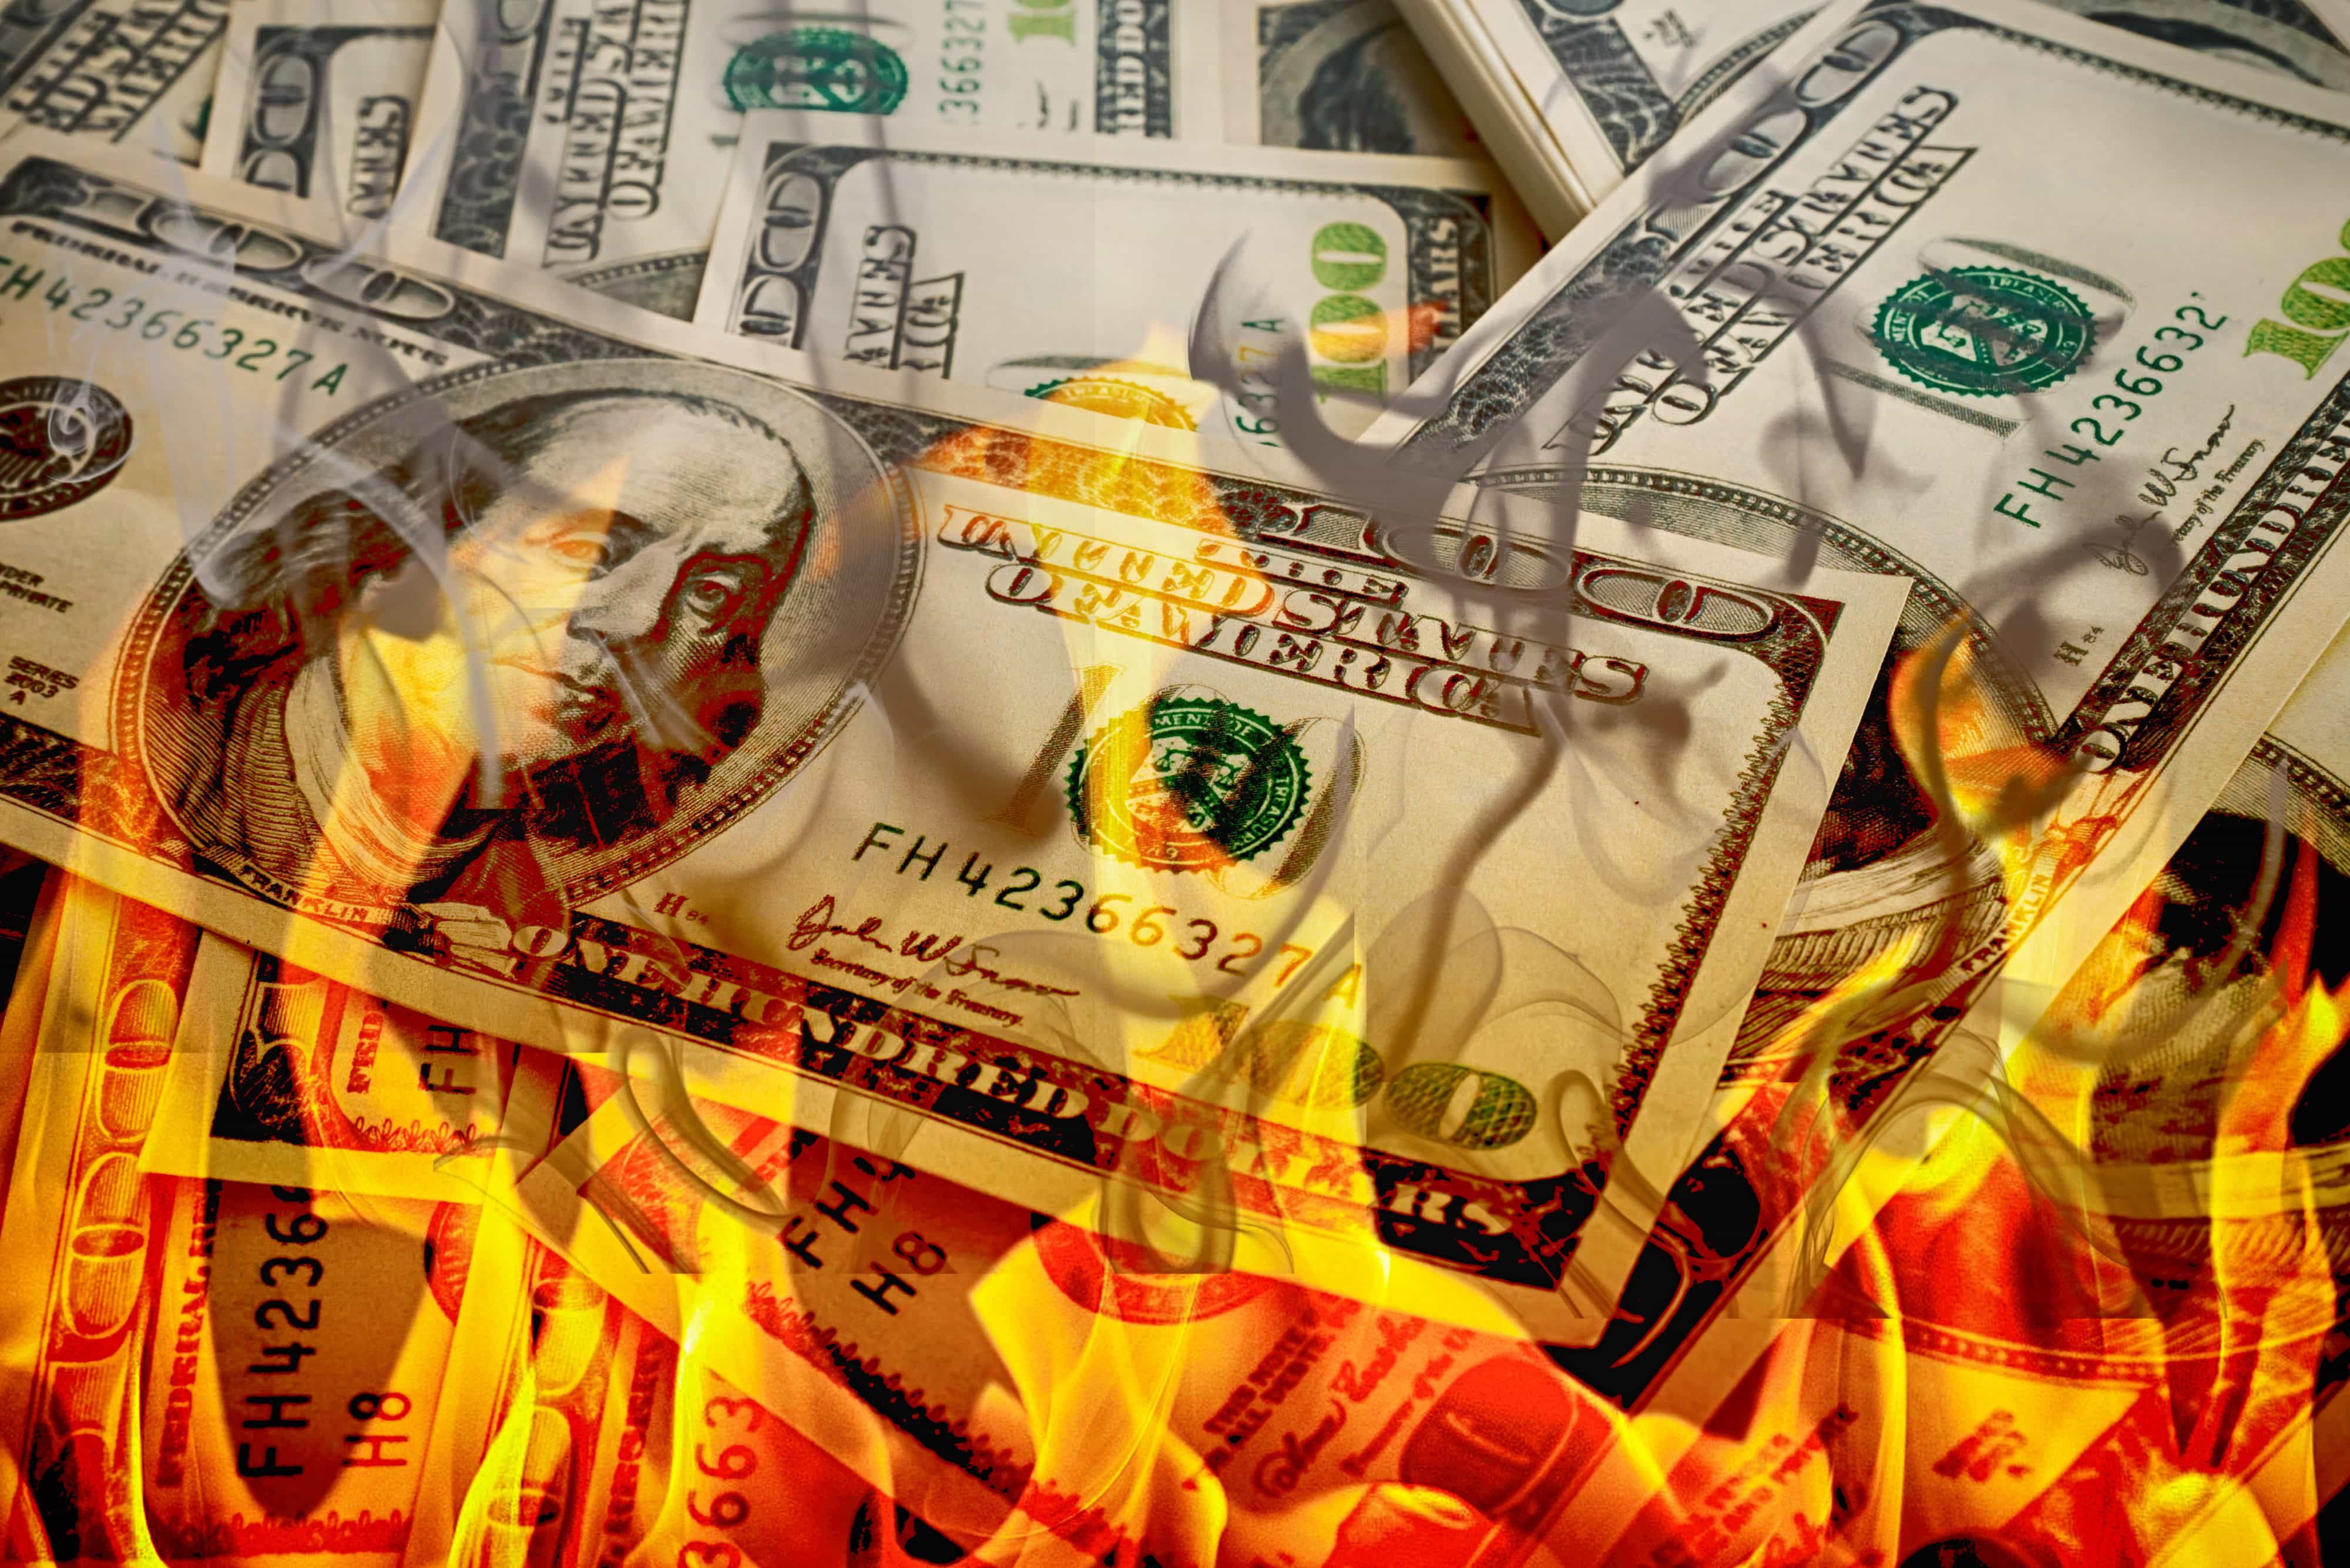 Crisis,dollars in fire, burning dollar